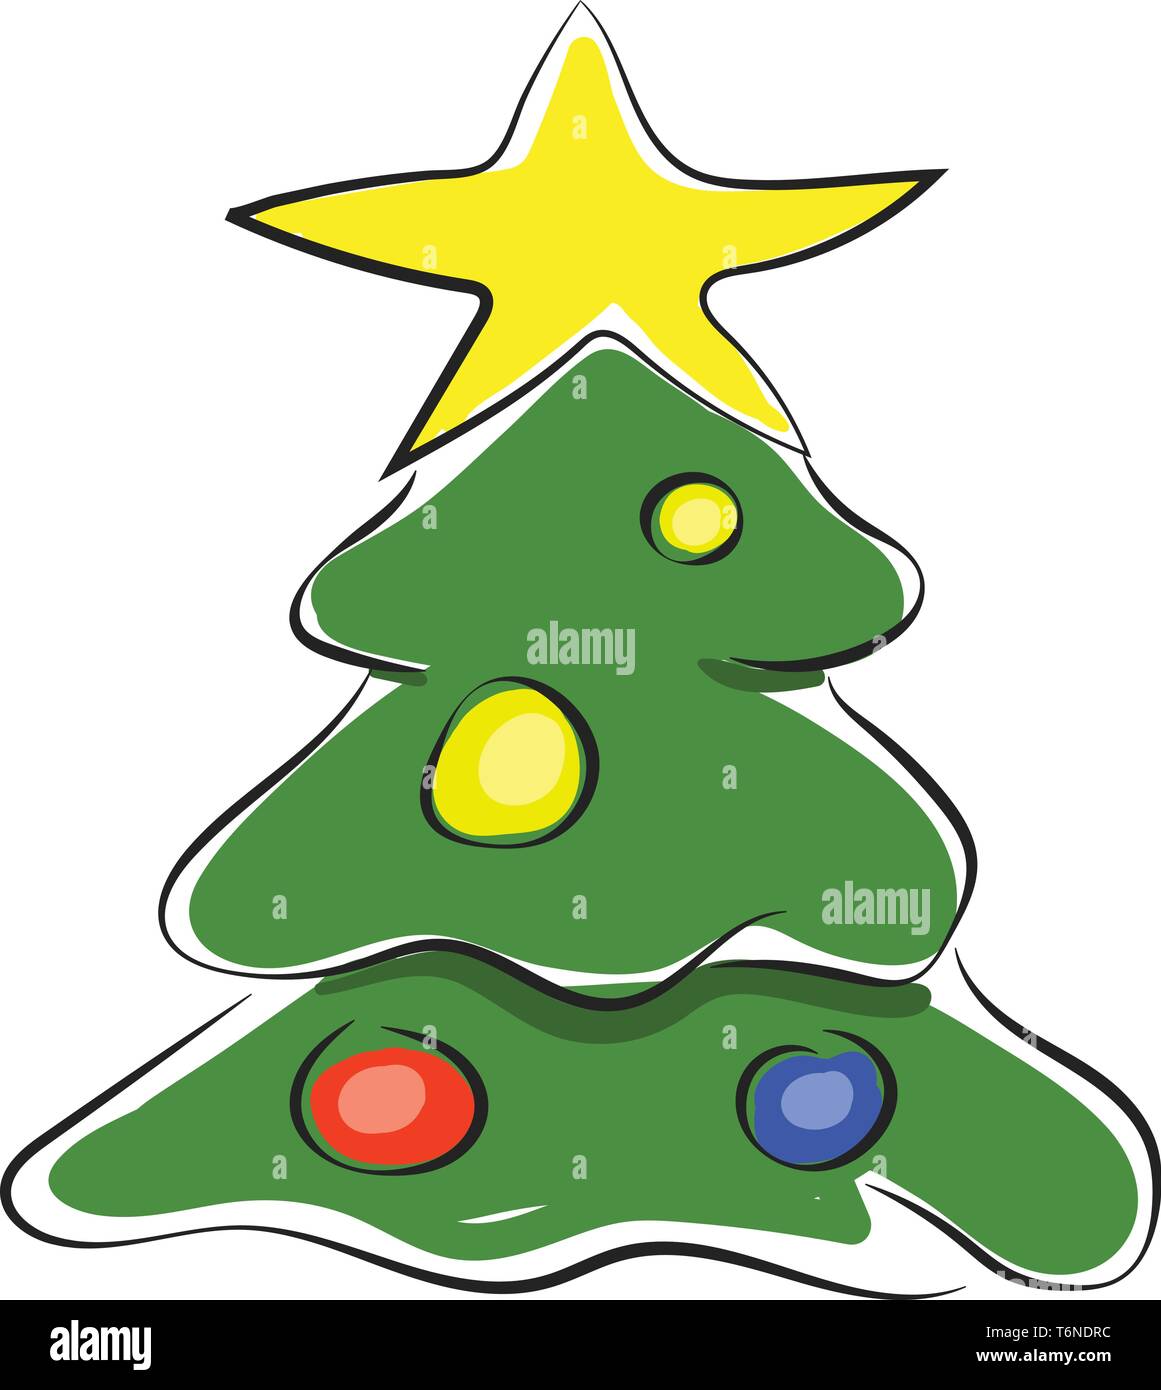 La pittura di un altamente decorate albero di Natale con luci colorate e sormontata da una stella d'oro del vettore di disegno a colori o illustrazione Illustrazione Vettoriale